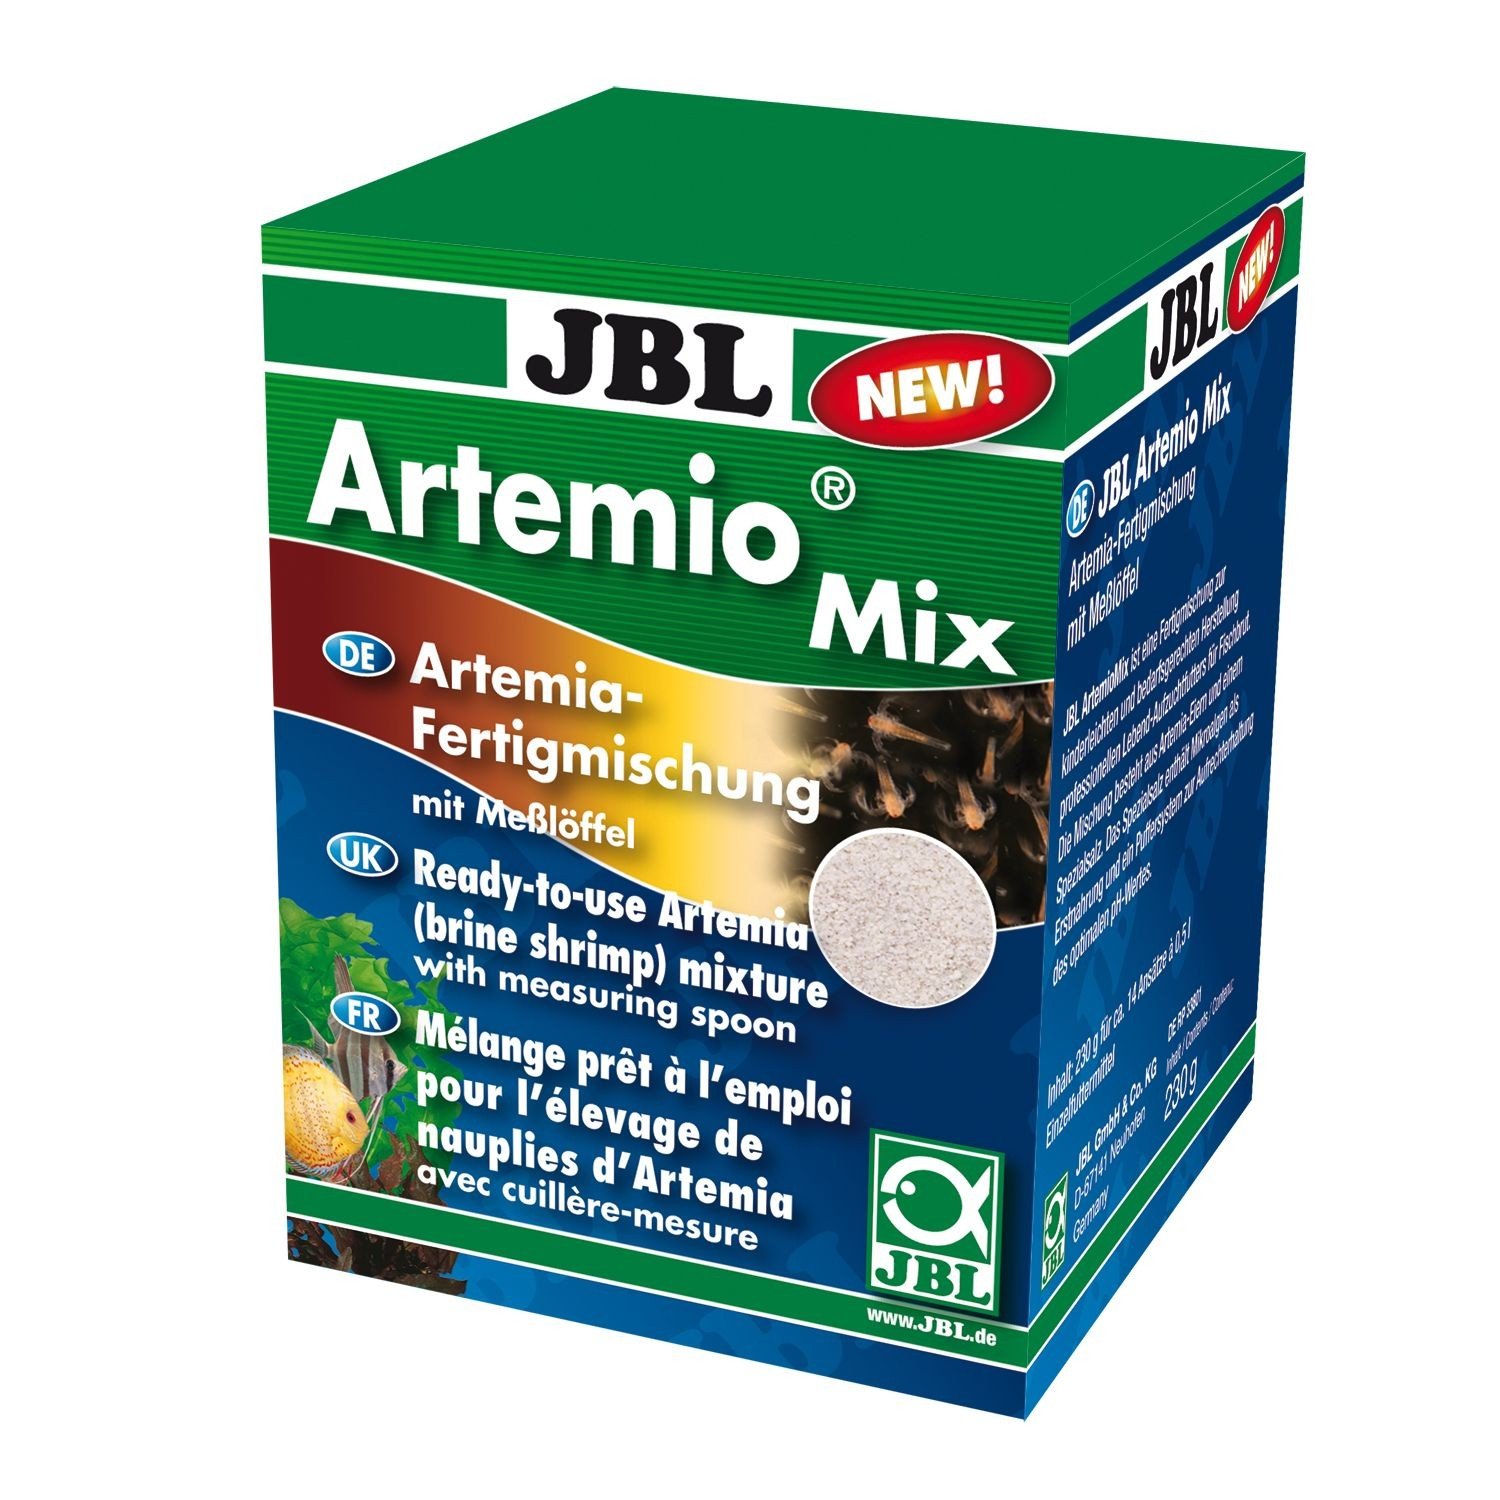 JBL Artemio Mix Mezcla de huevos de artemia y sal para mezclar